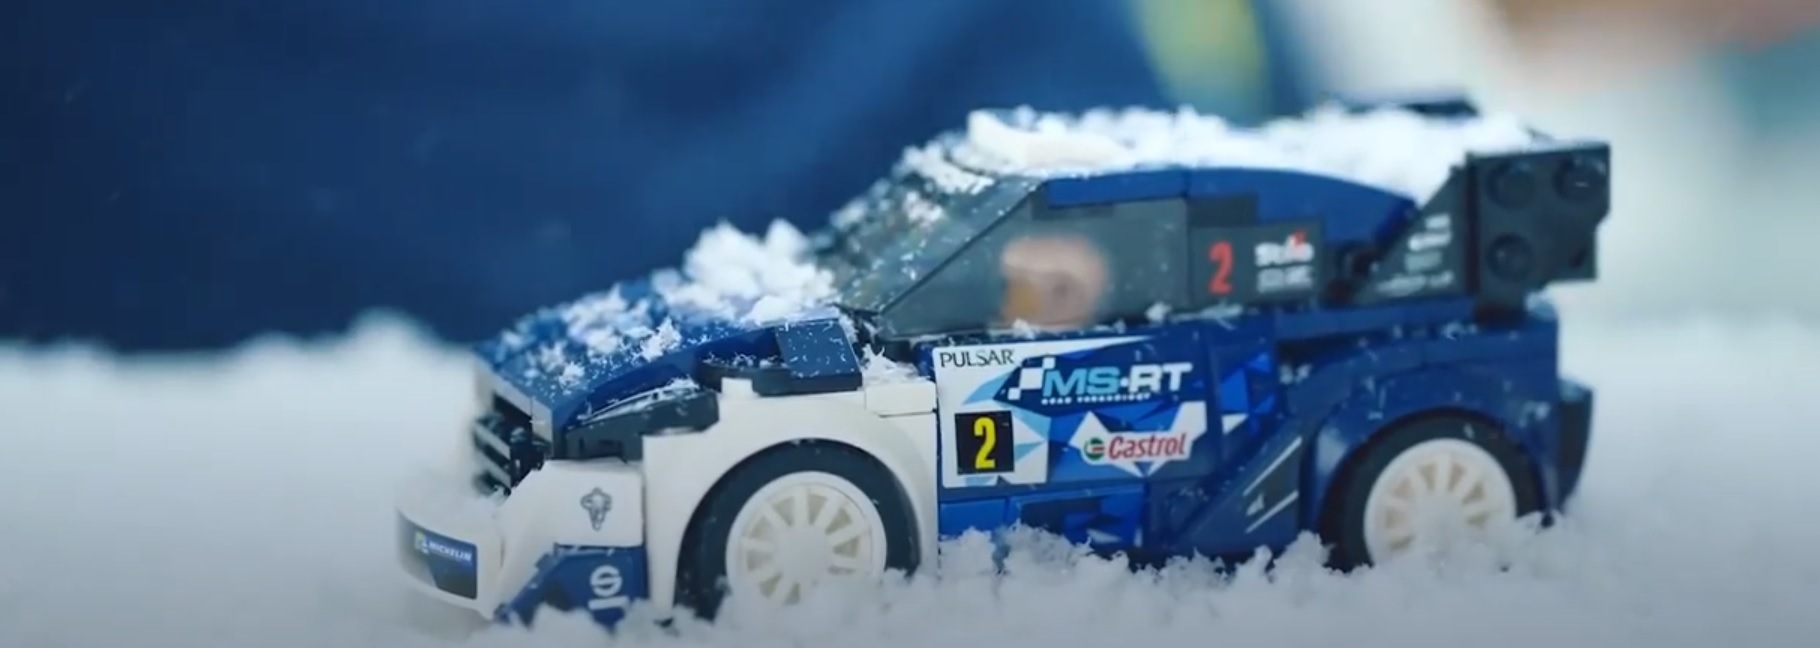 LEGO SPEED - Ford Fiesta M-Sport WRC - 75885